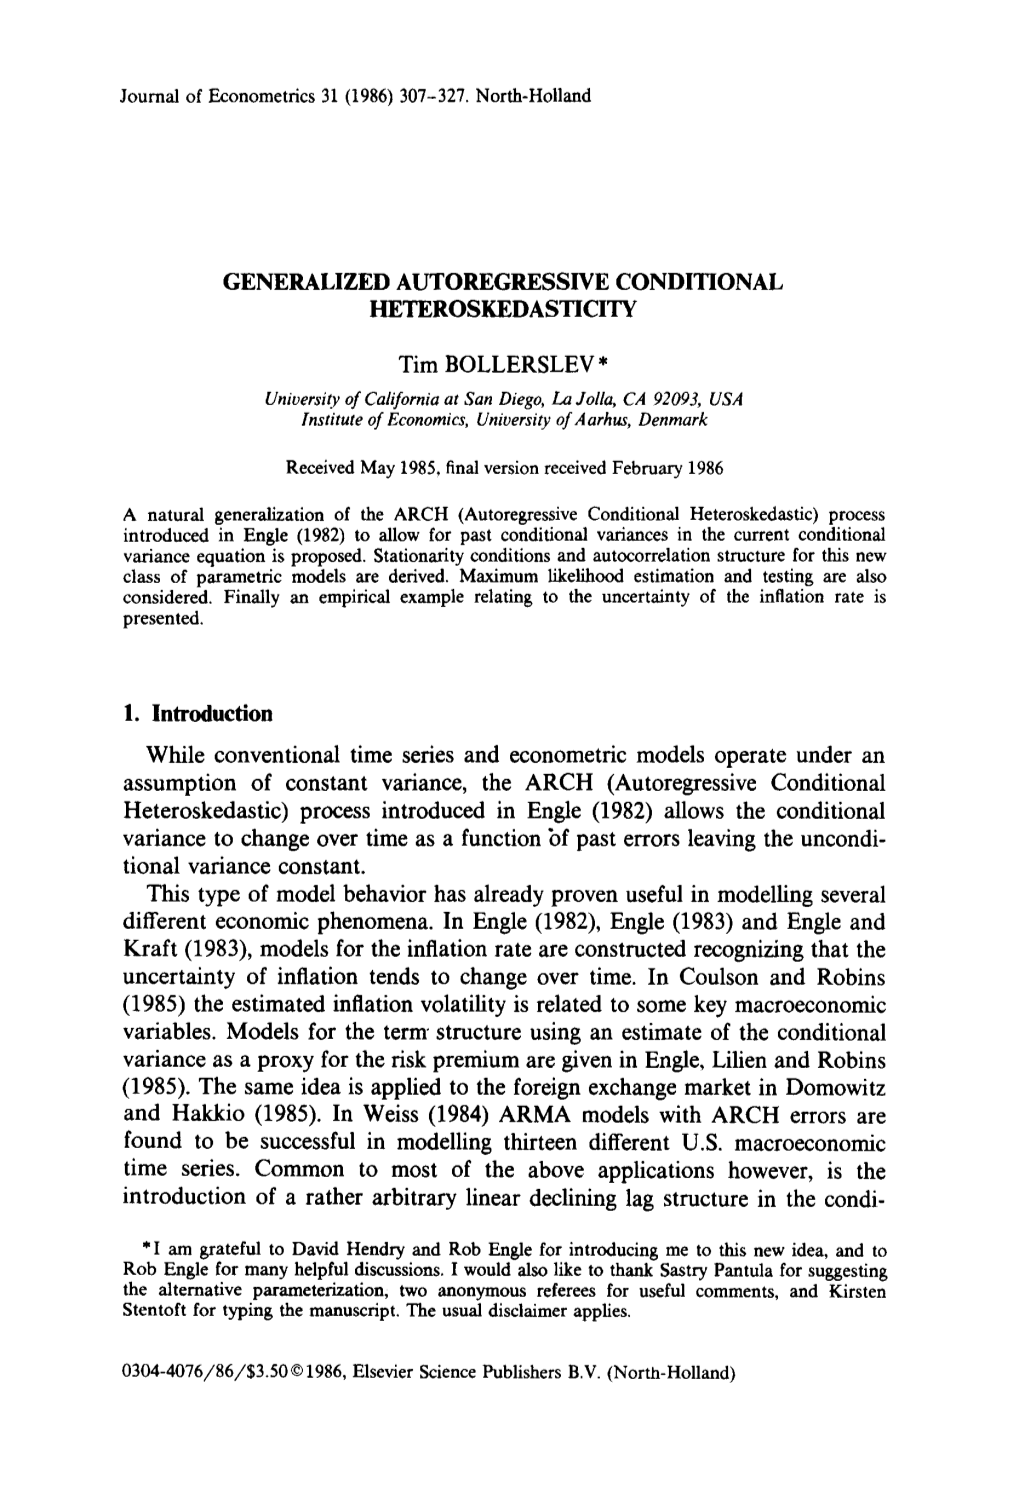 Generalized Autoregressive Conditional Heteroskedasticity